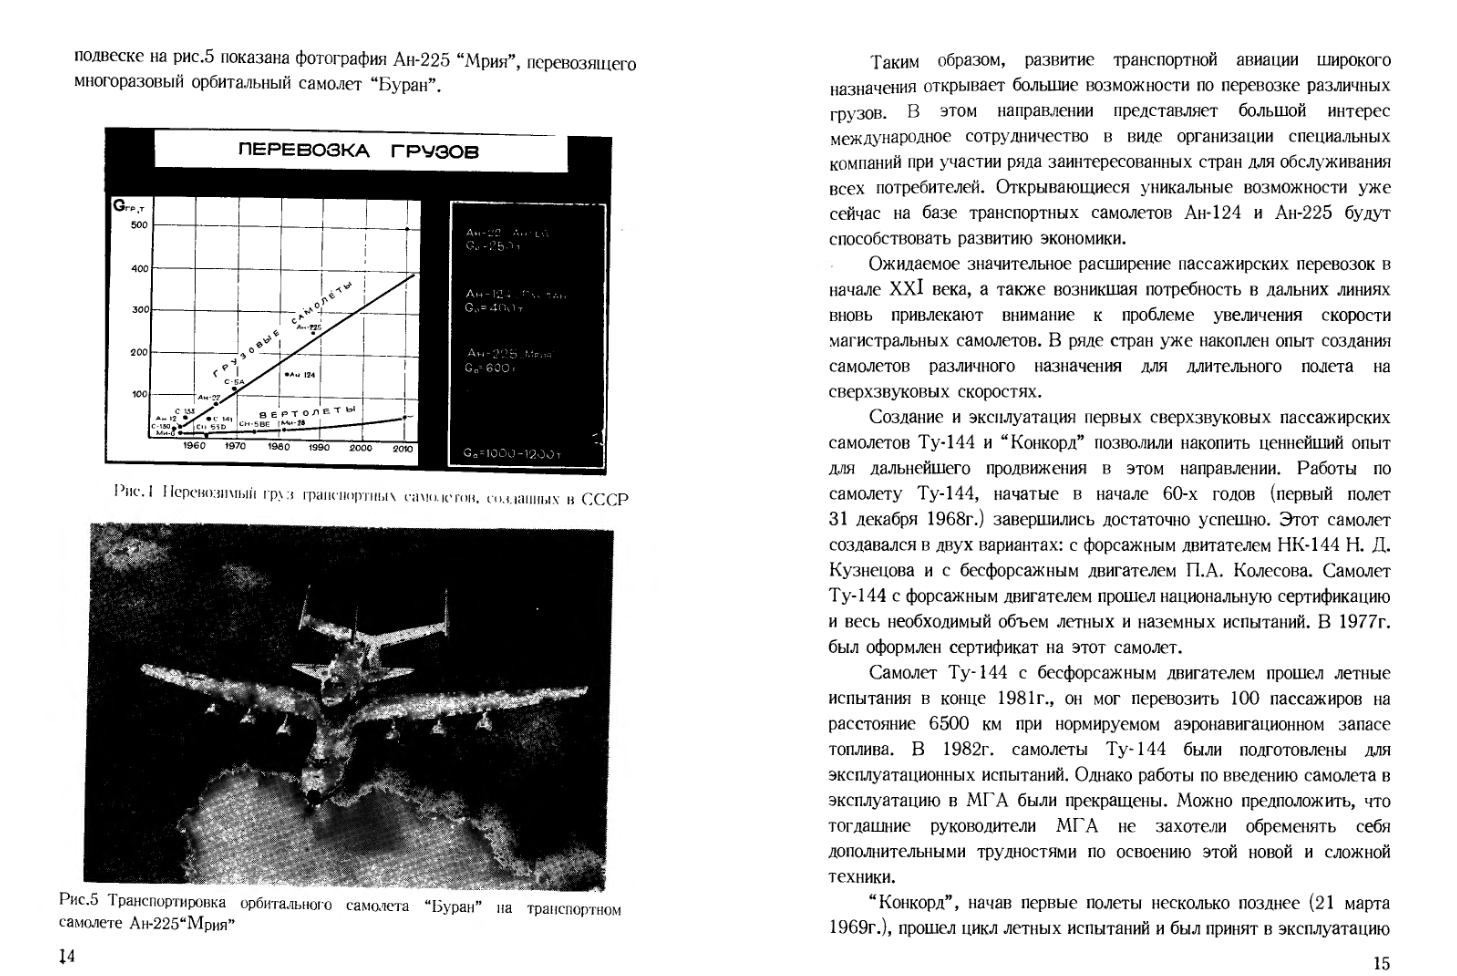 Аэродинамика, динамика полета магистральных самолетов. 1995